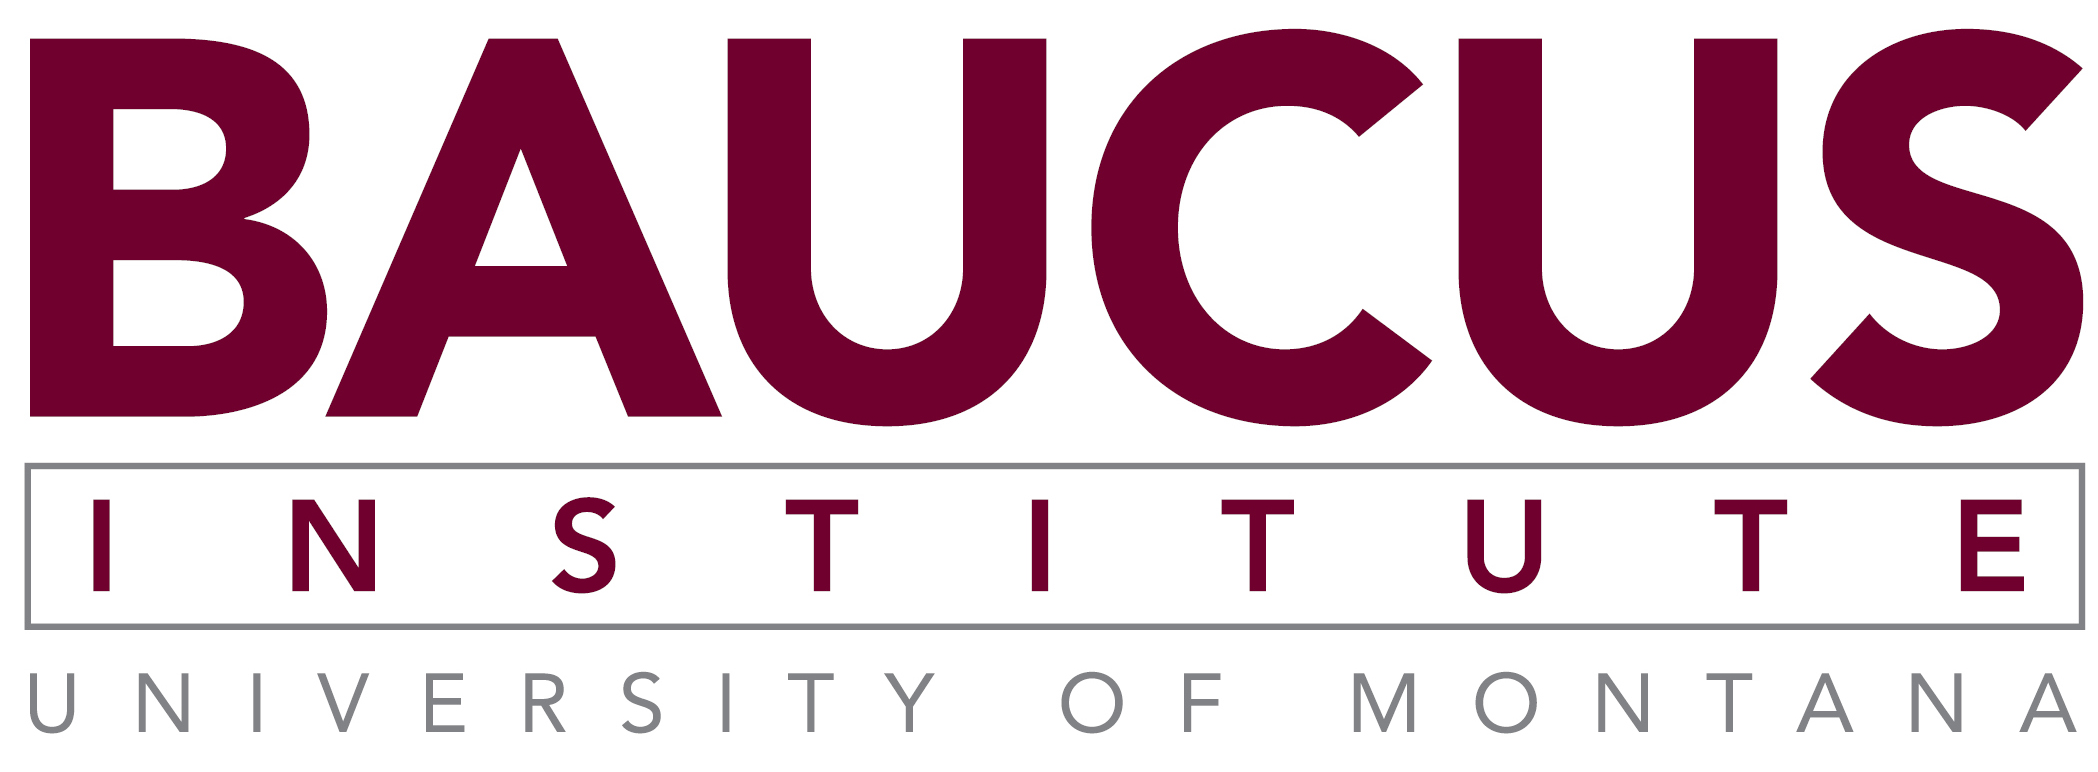 Baucus Institute University of Montana